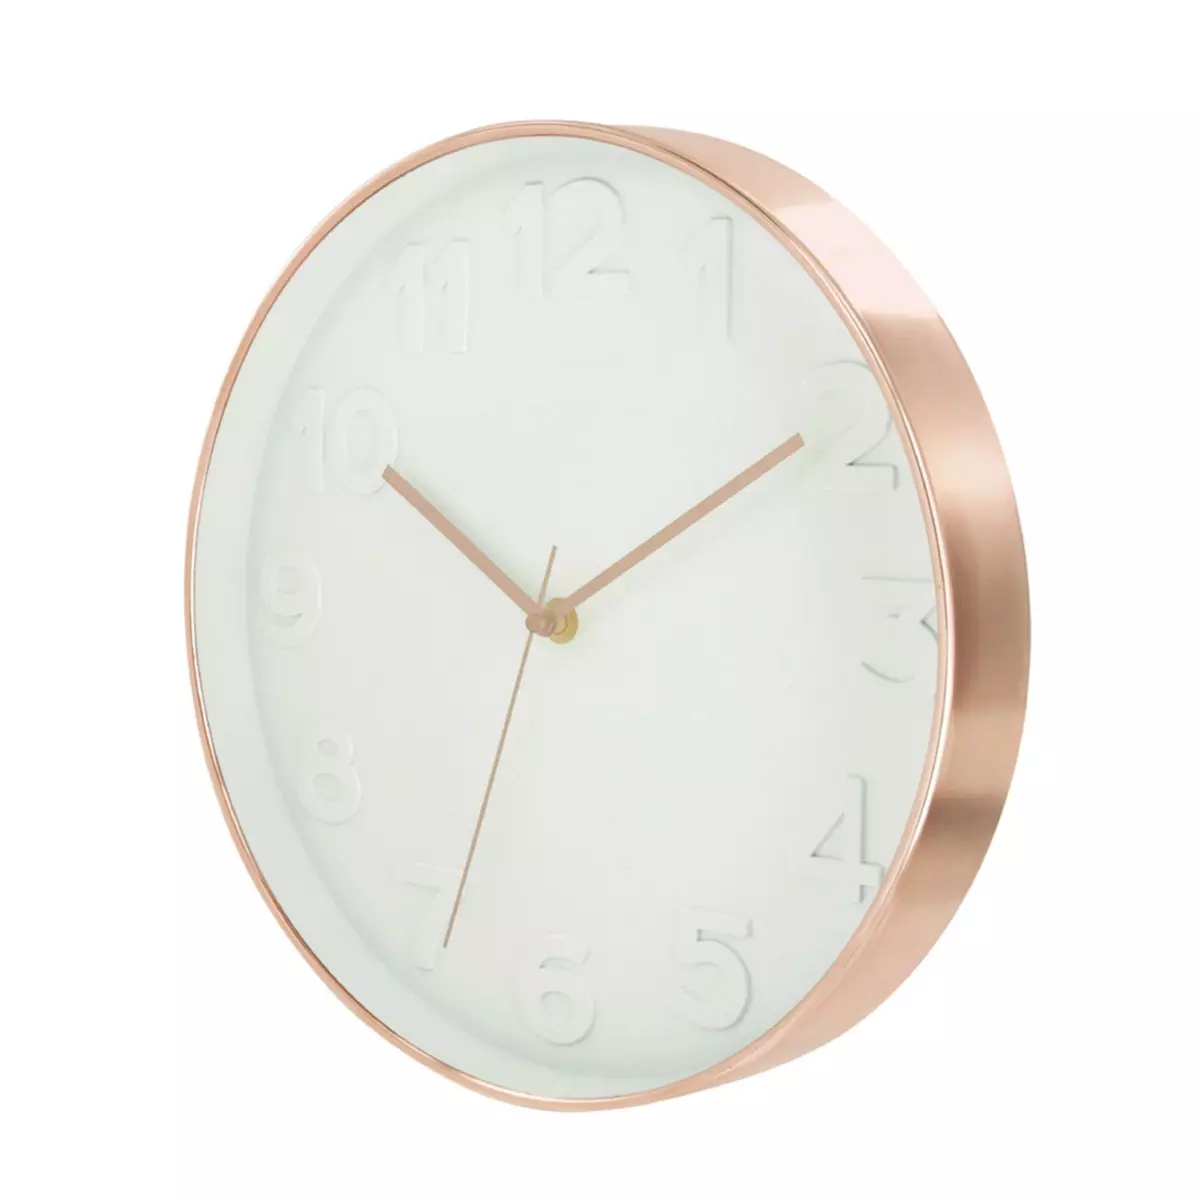 The Home Deco Factory Horloge ronde Deco Chic - Diam. 30,5 cm - Blanc